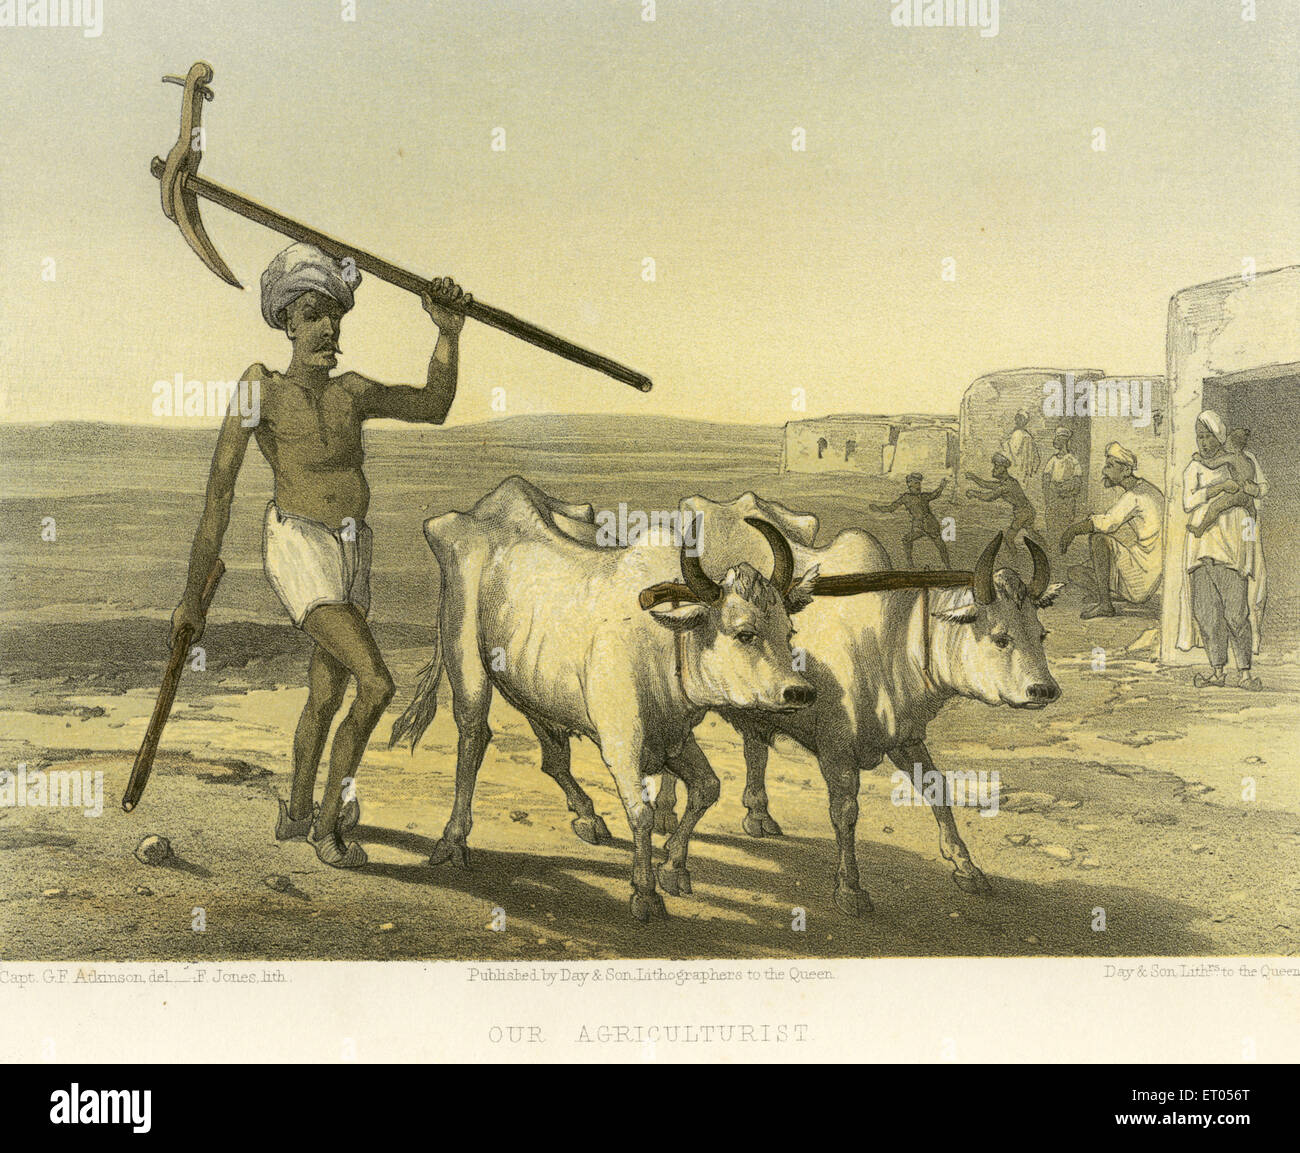 Farmer mit Bullock; koloniale indische Bilder; Farmer Indien; unser Landwirt; Indien; Asien; asiatisch; indisch; Bild des alten Jahrgangs der 1900er Jahre Stockfoto